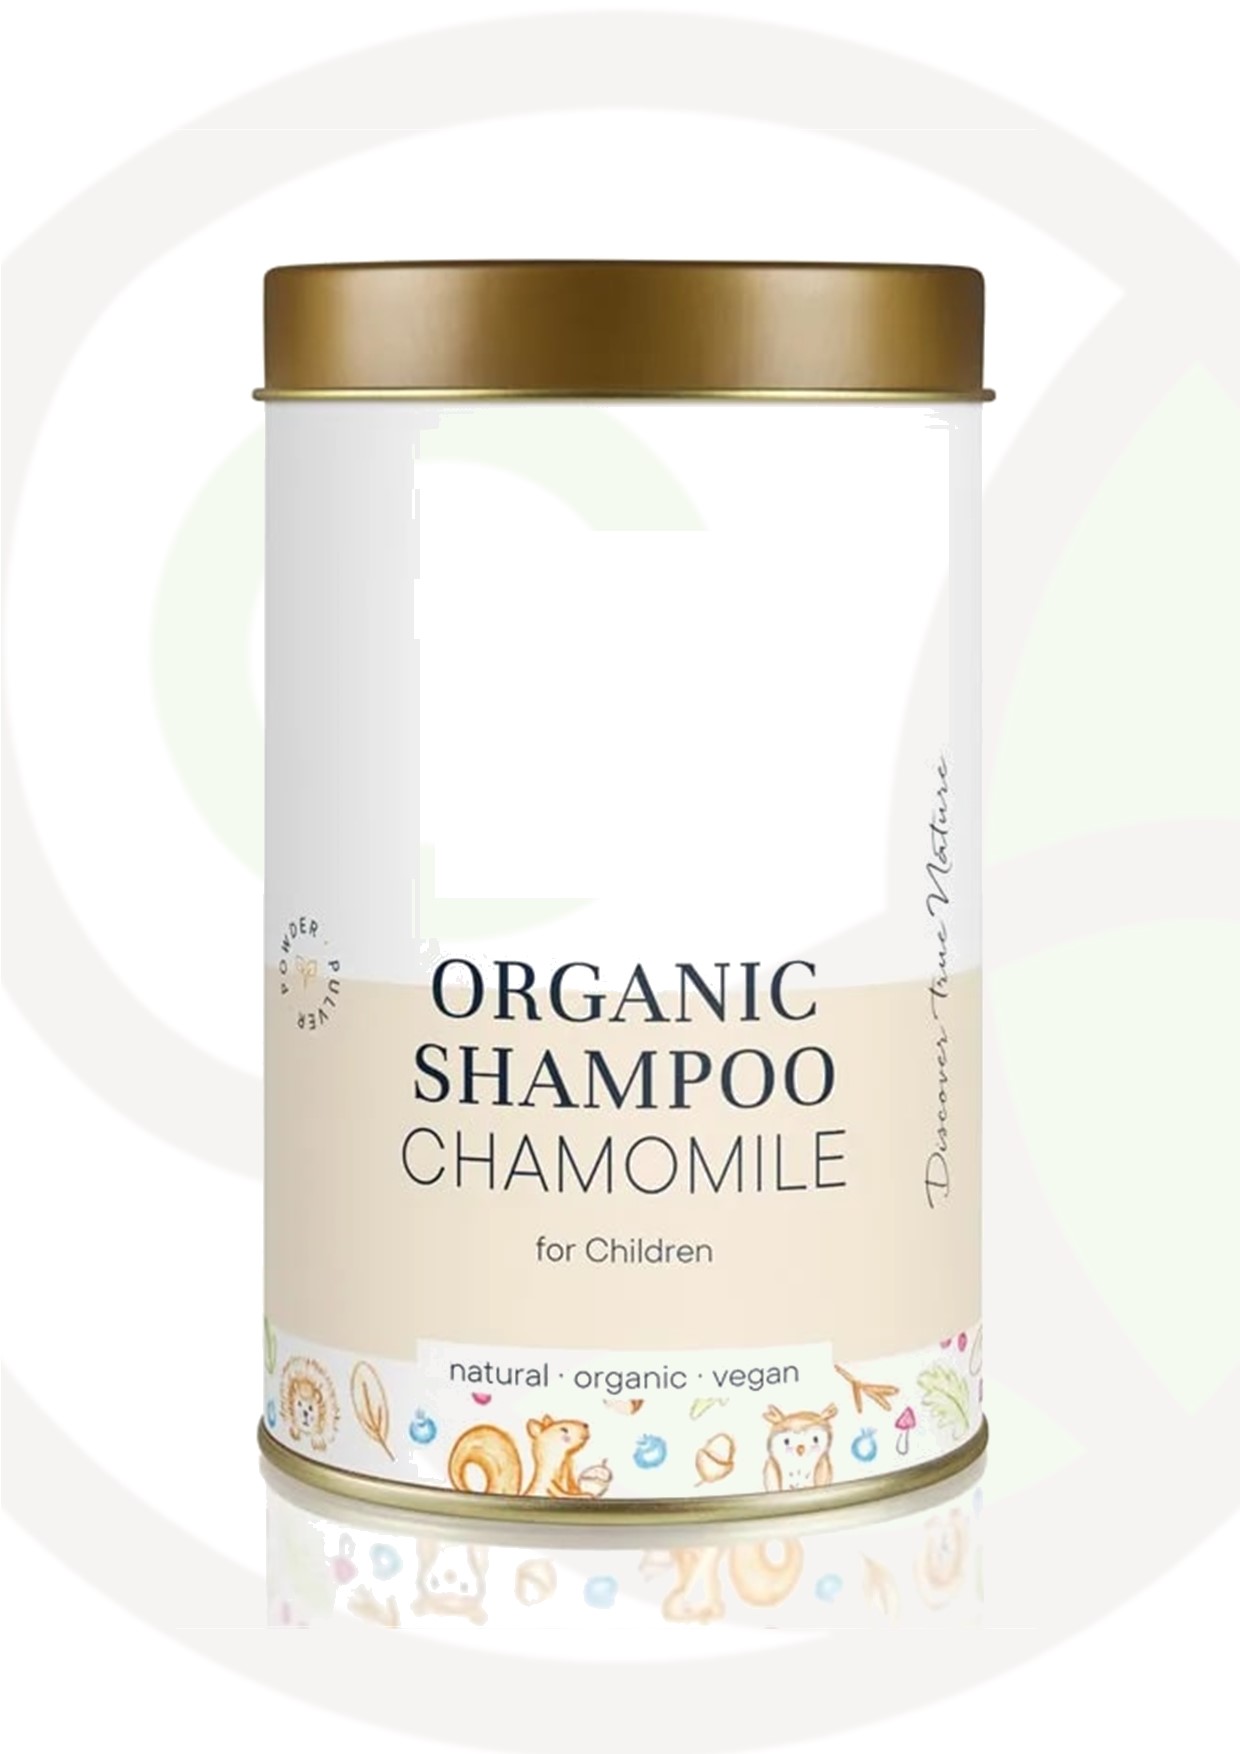 Featured image for “Shampoo in polvere per bimbi camomilla”